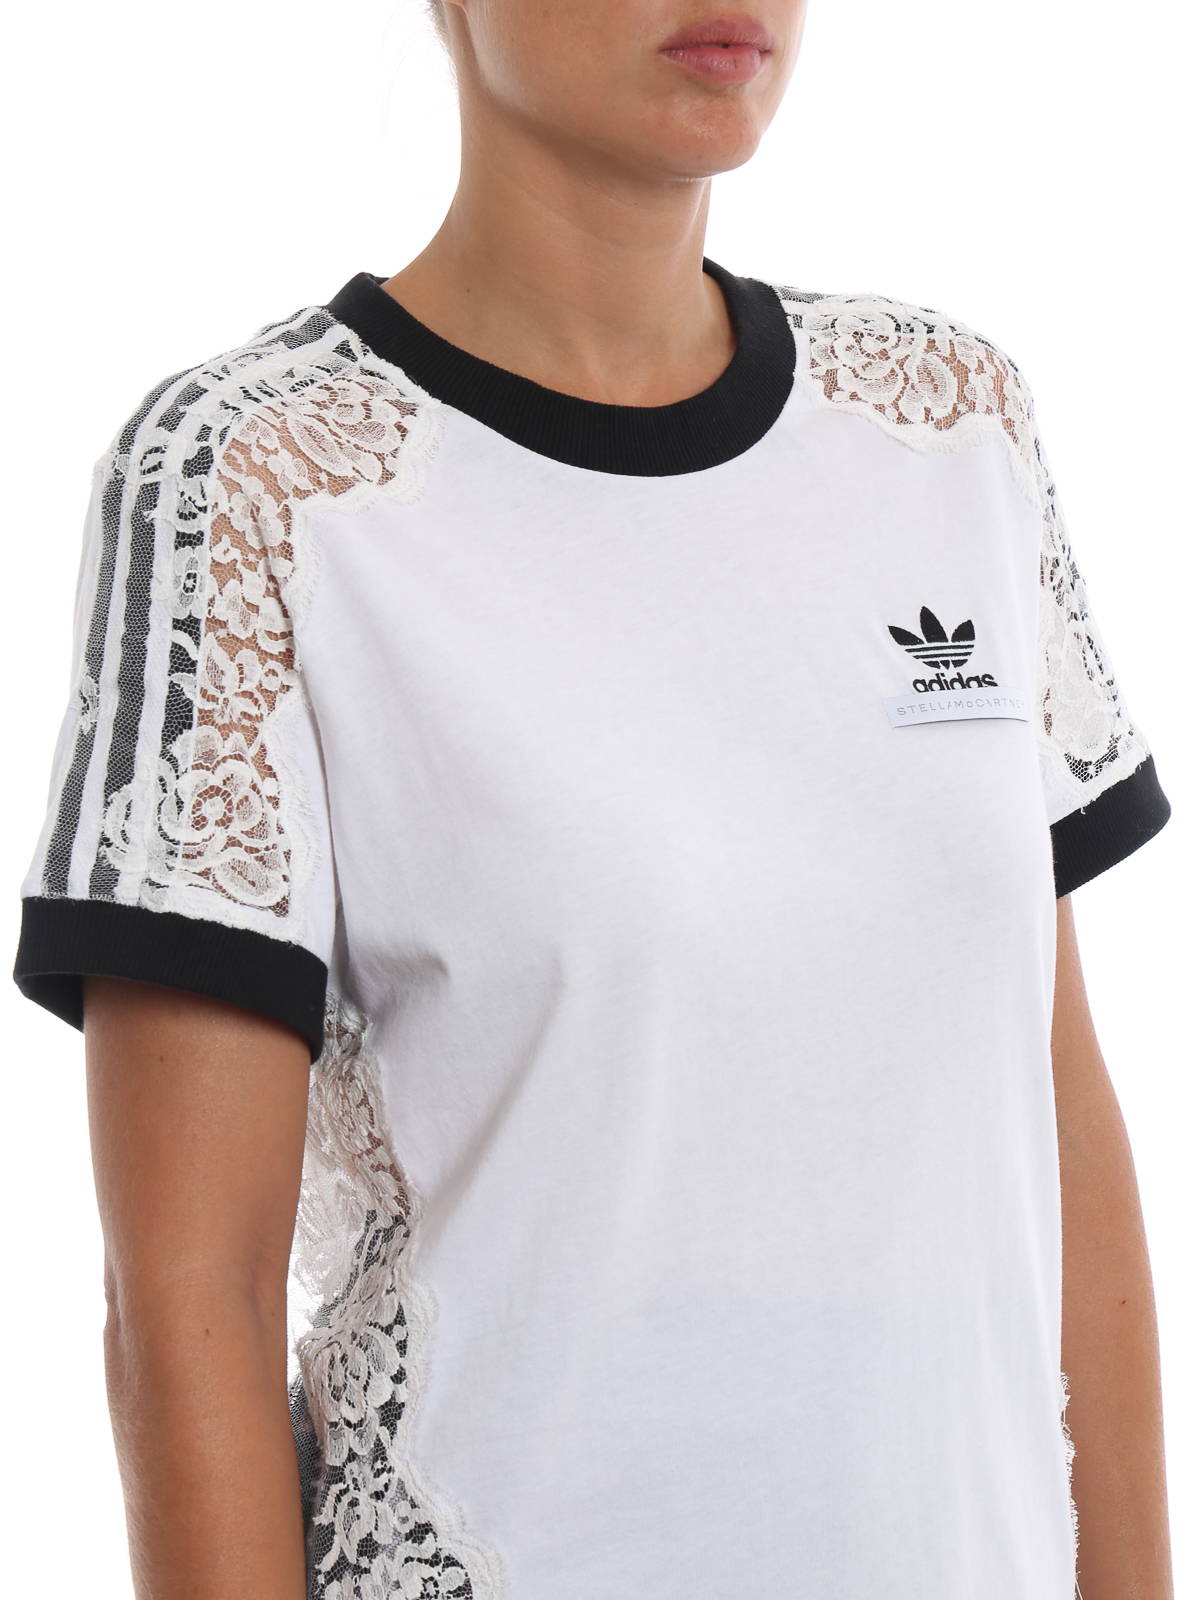 Tシャツ Adidas by Stella McCartney - Tシャツ - 白 - 536050SLW409000